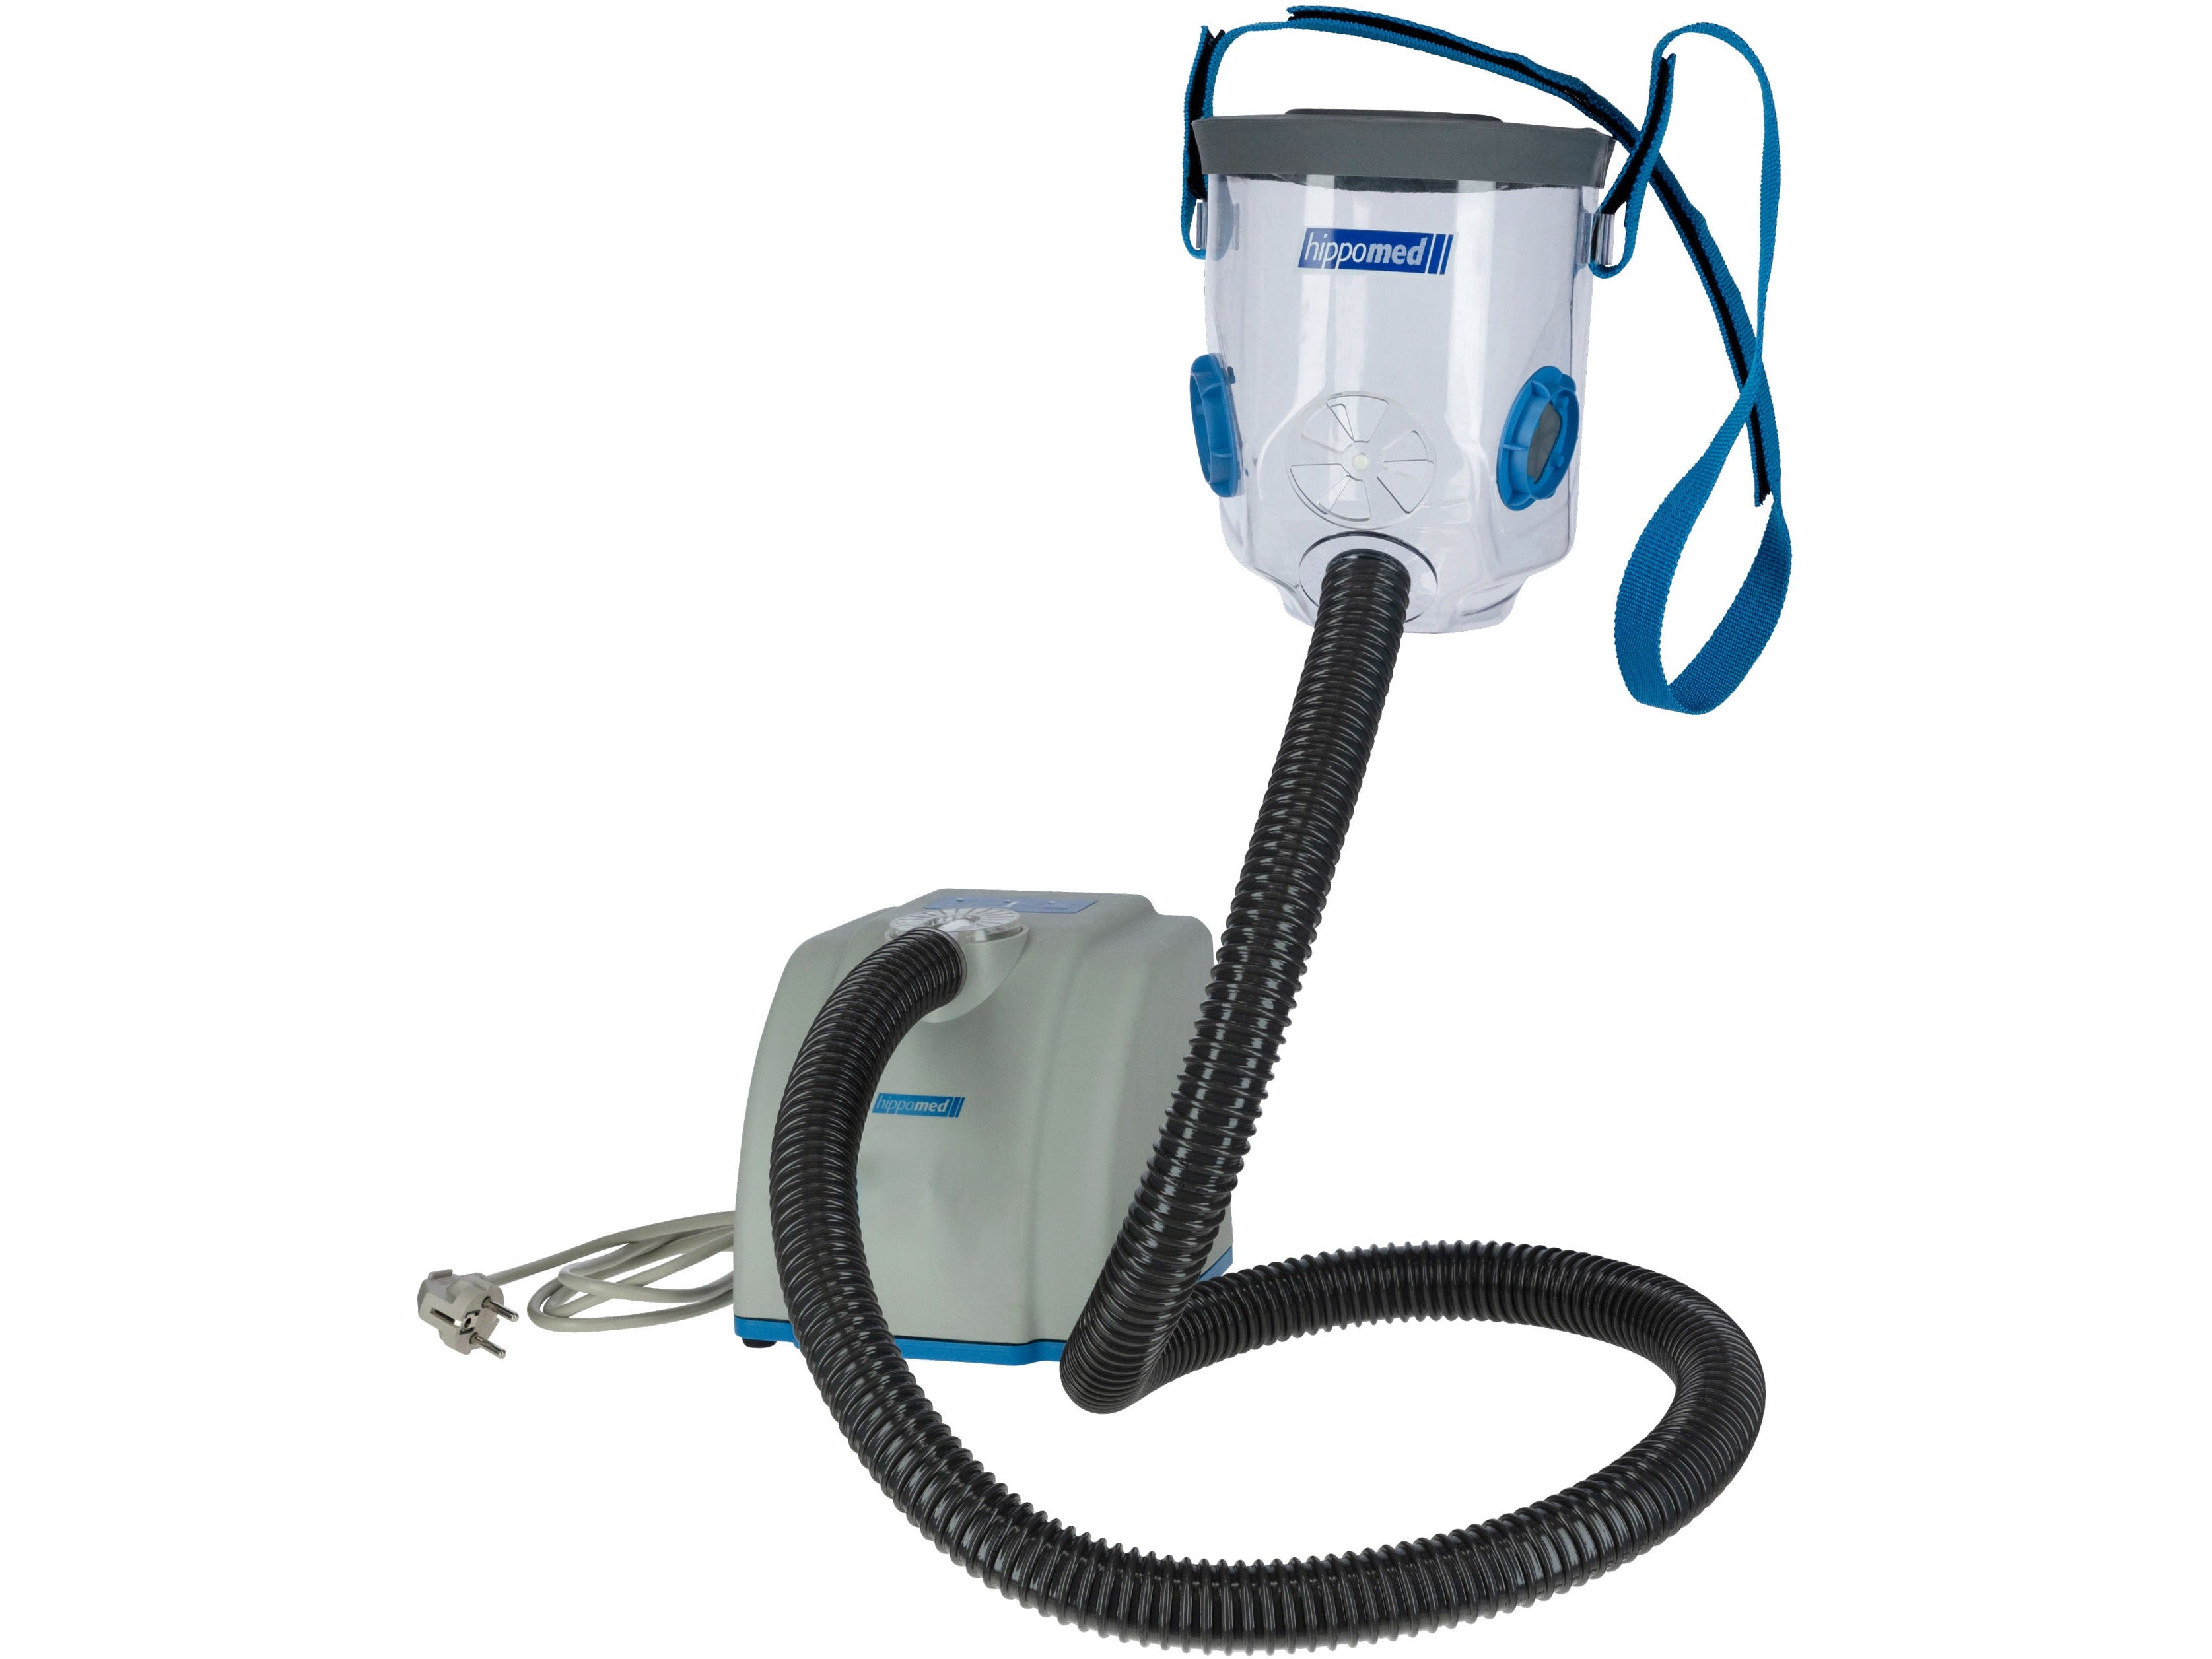 Hippomed Air One Ultraschall-Inhalator für Pferde